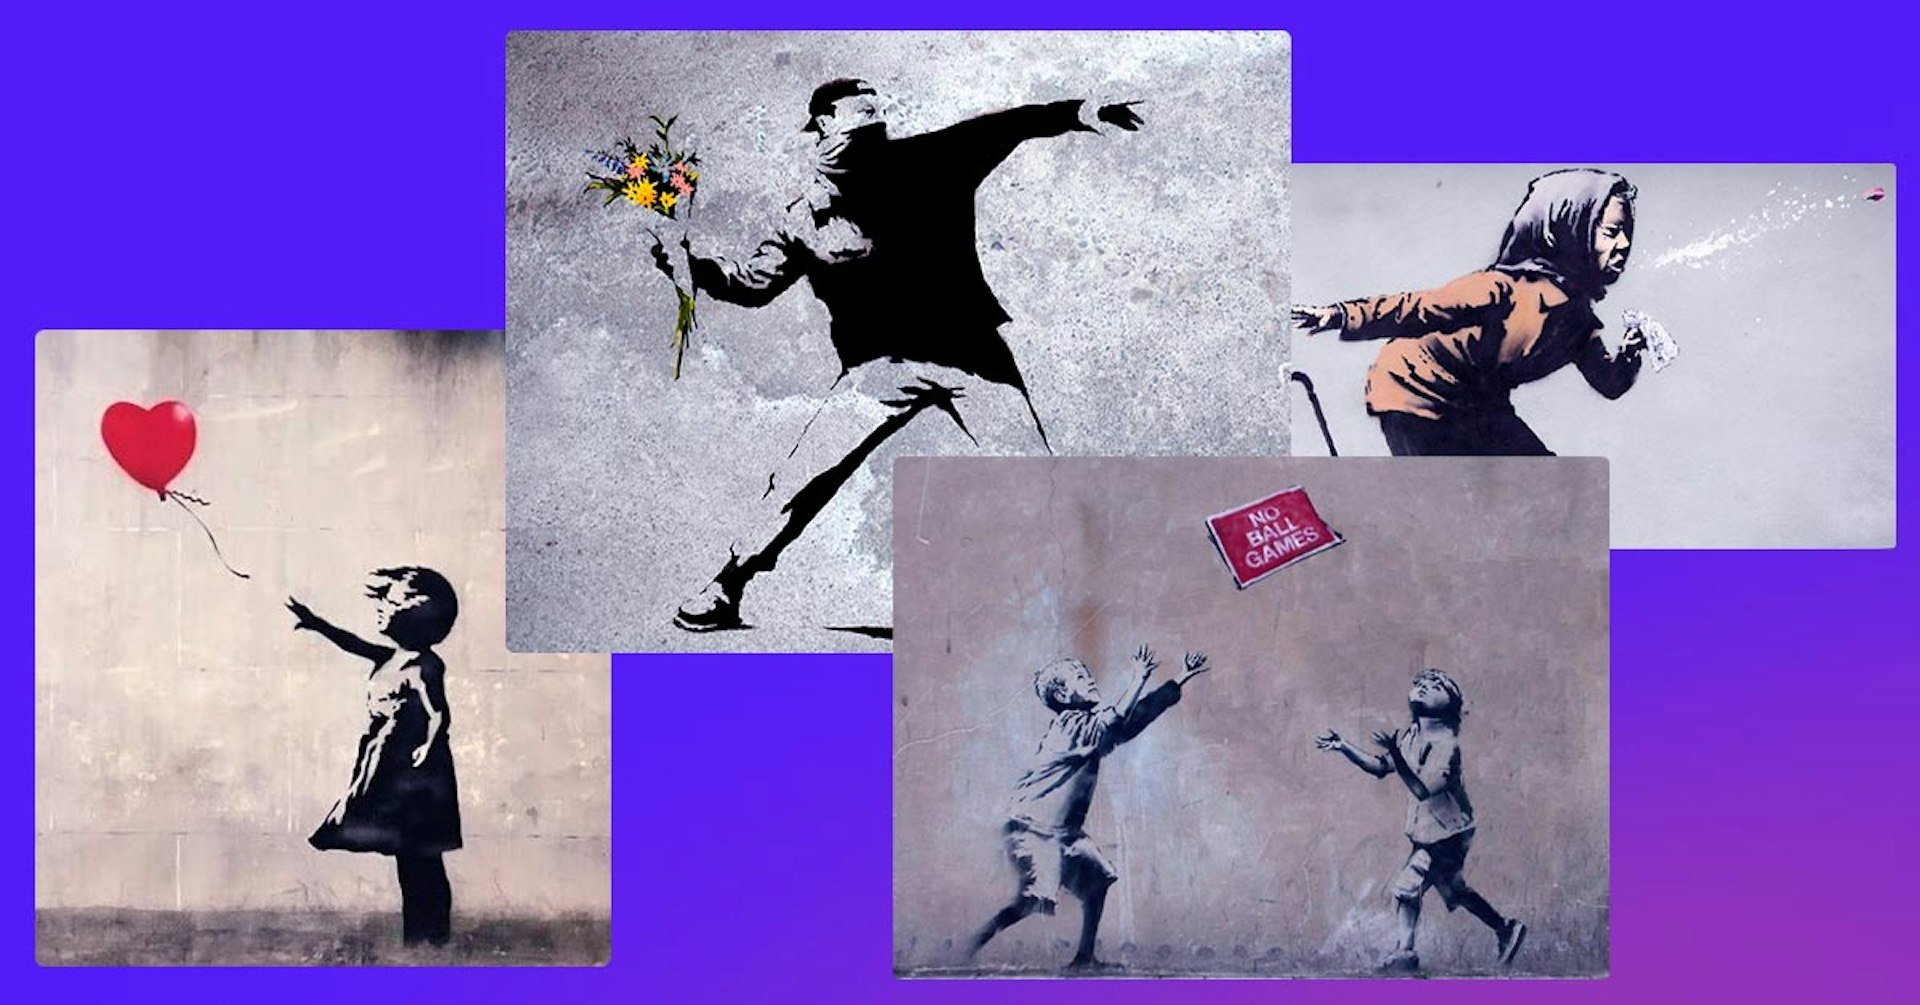 ¿Quién es Banksy? “Banksy face” un personaje desconocido con mucha influencia artística